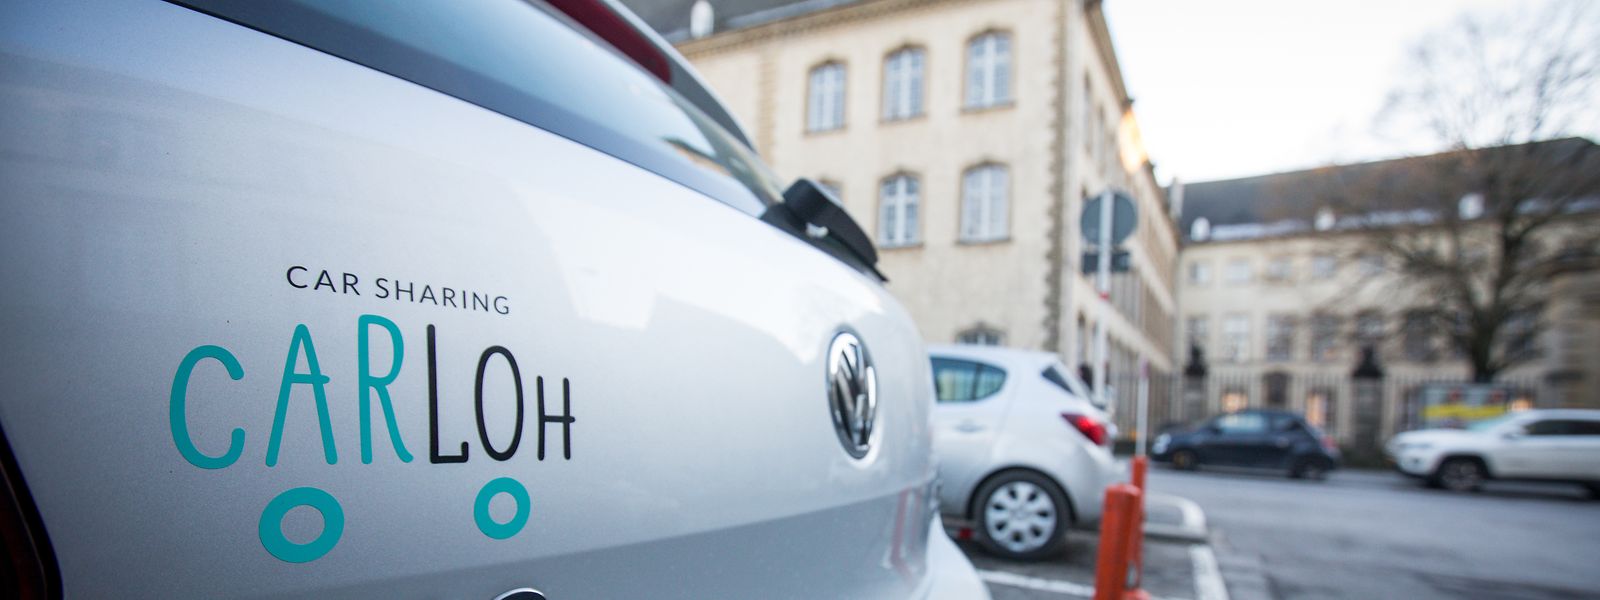 L'autopartage contribue également à réduire les besoins en stationnement au Luxembourg.